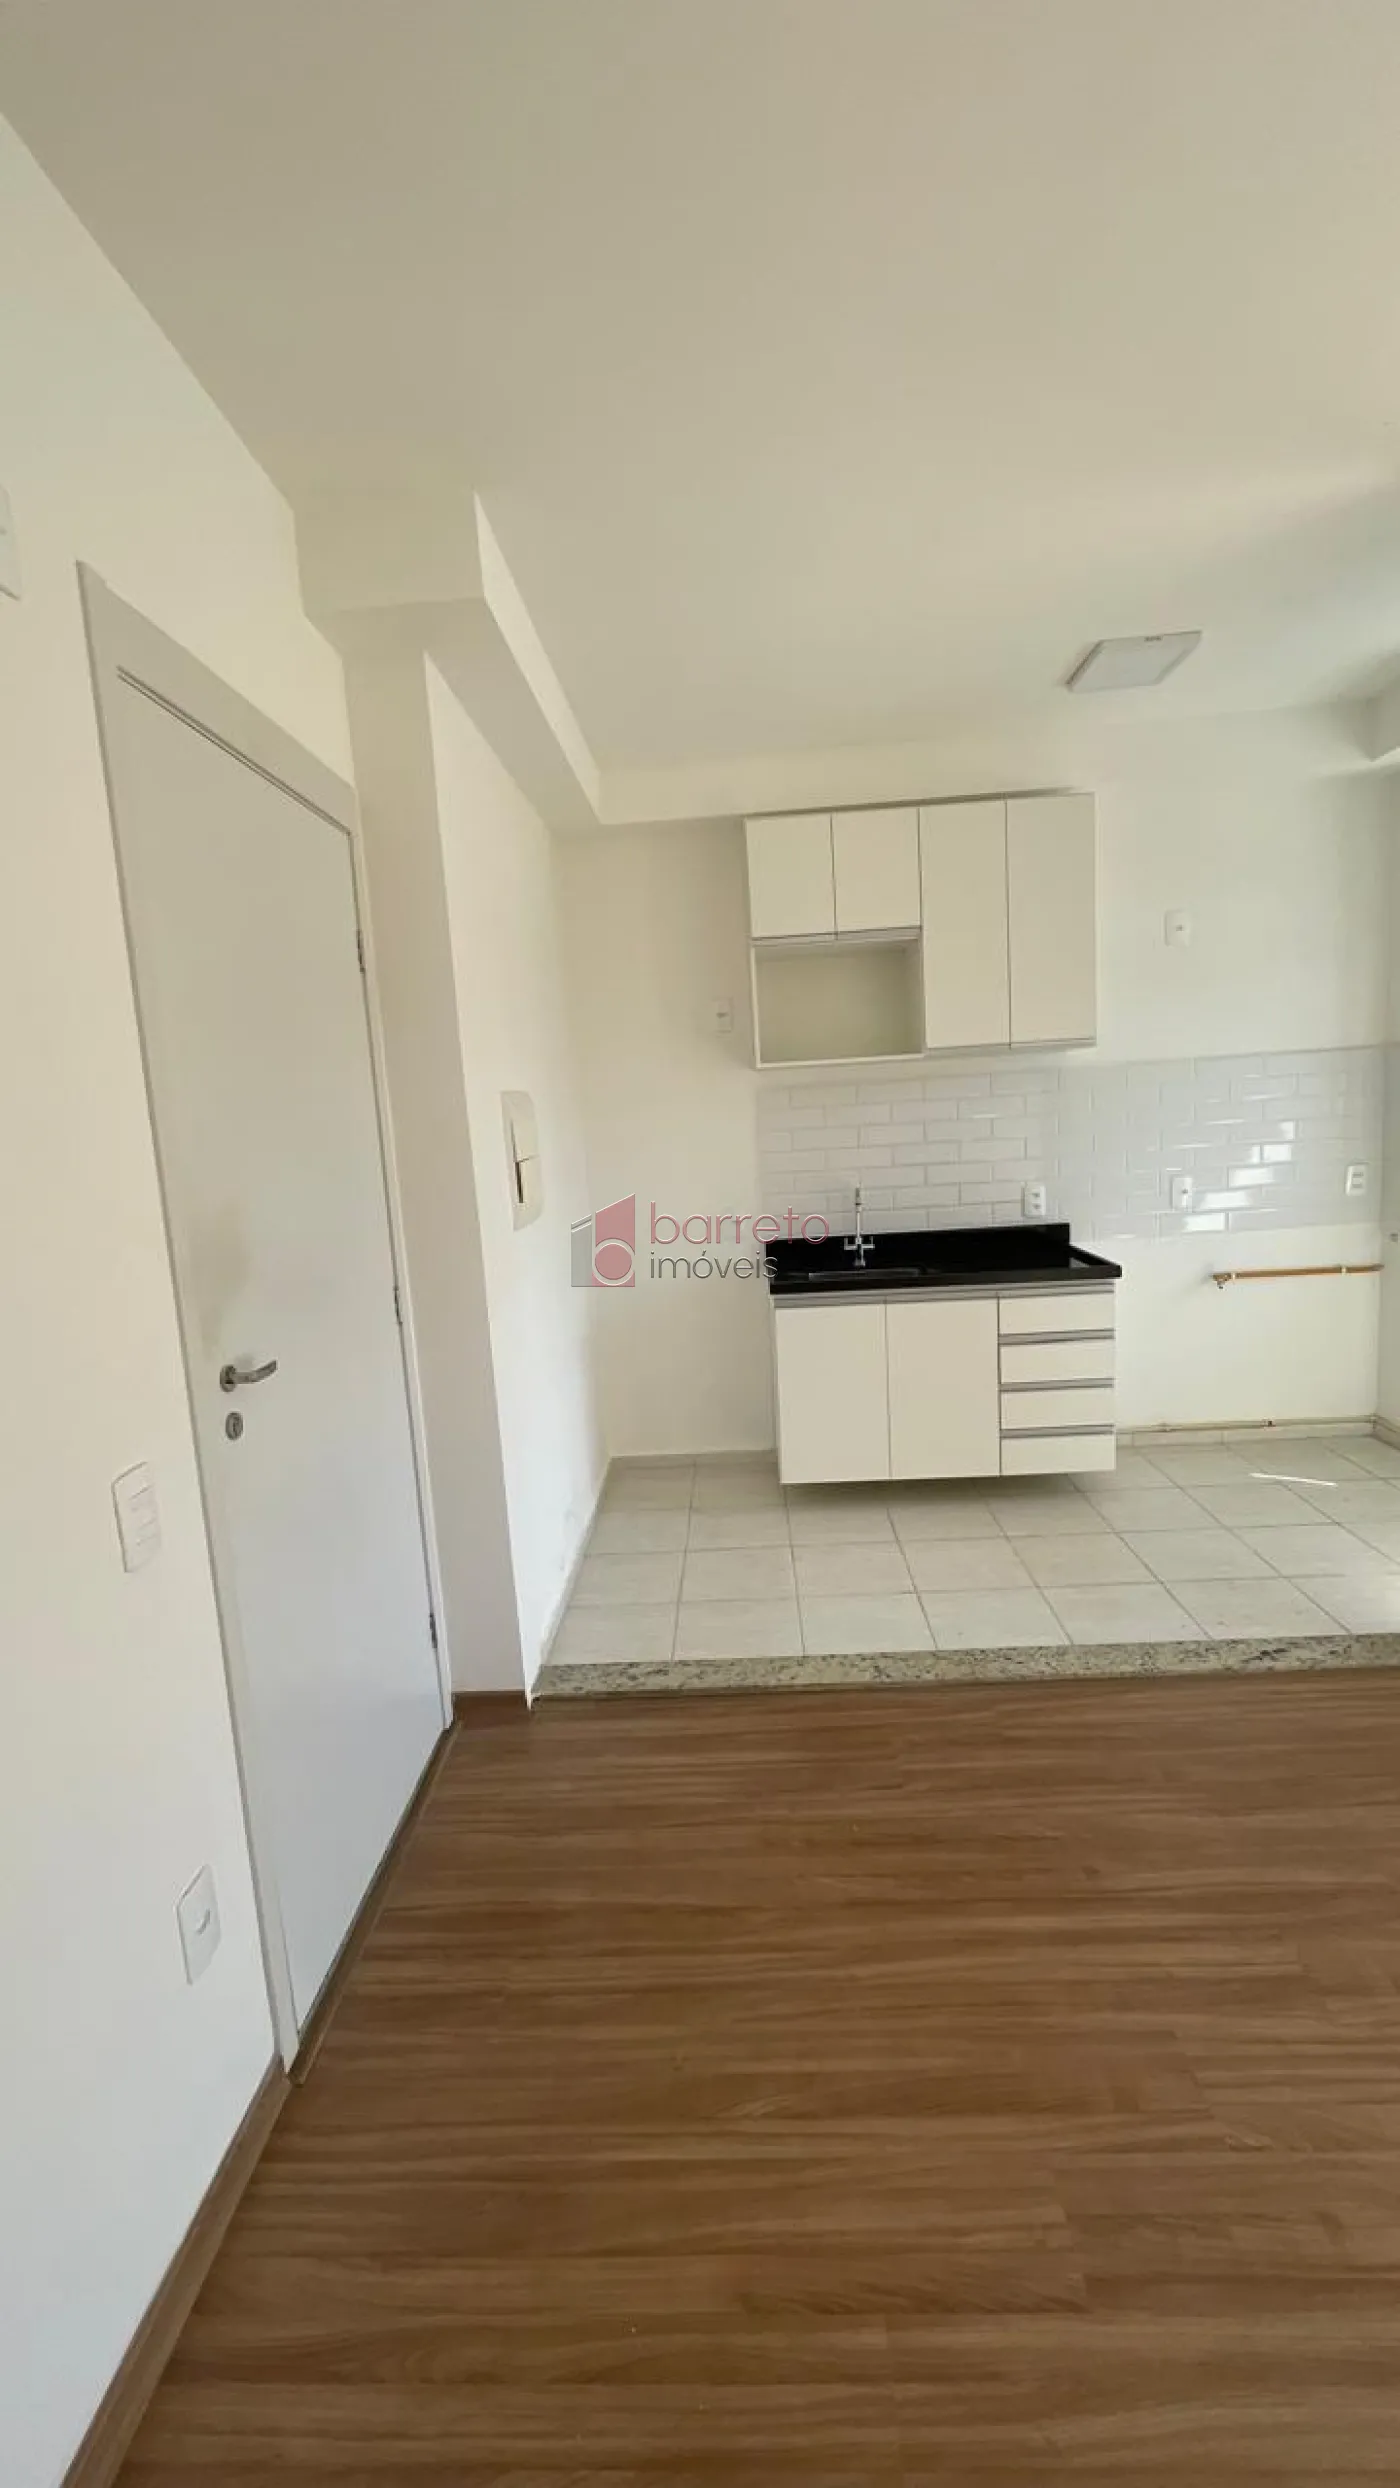 Alugar Apartamento / Padrão em Jundiaí R$ 1.800,00 - Foto 4